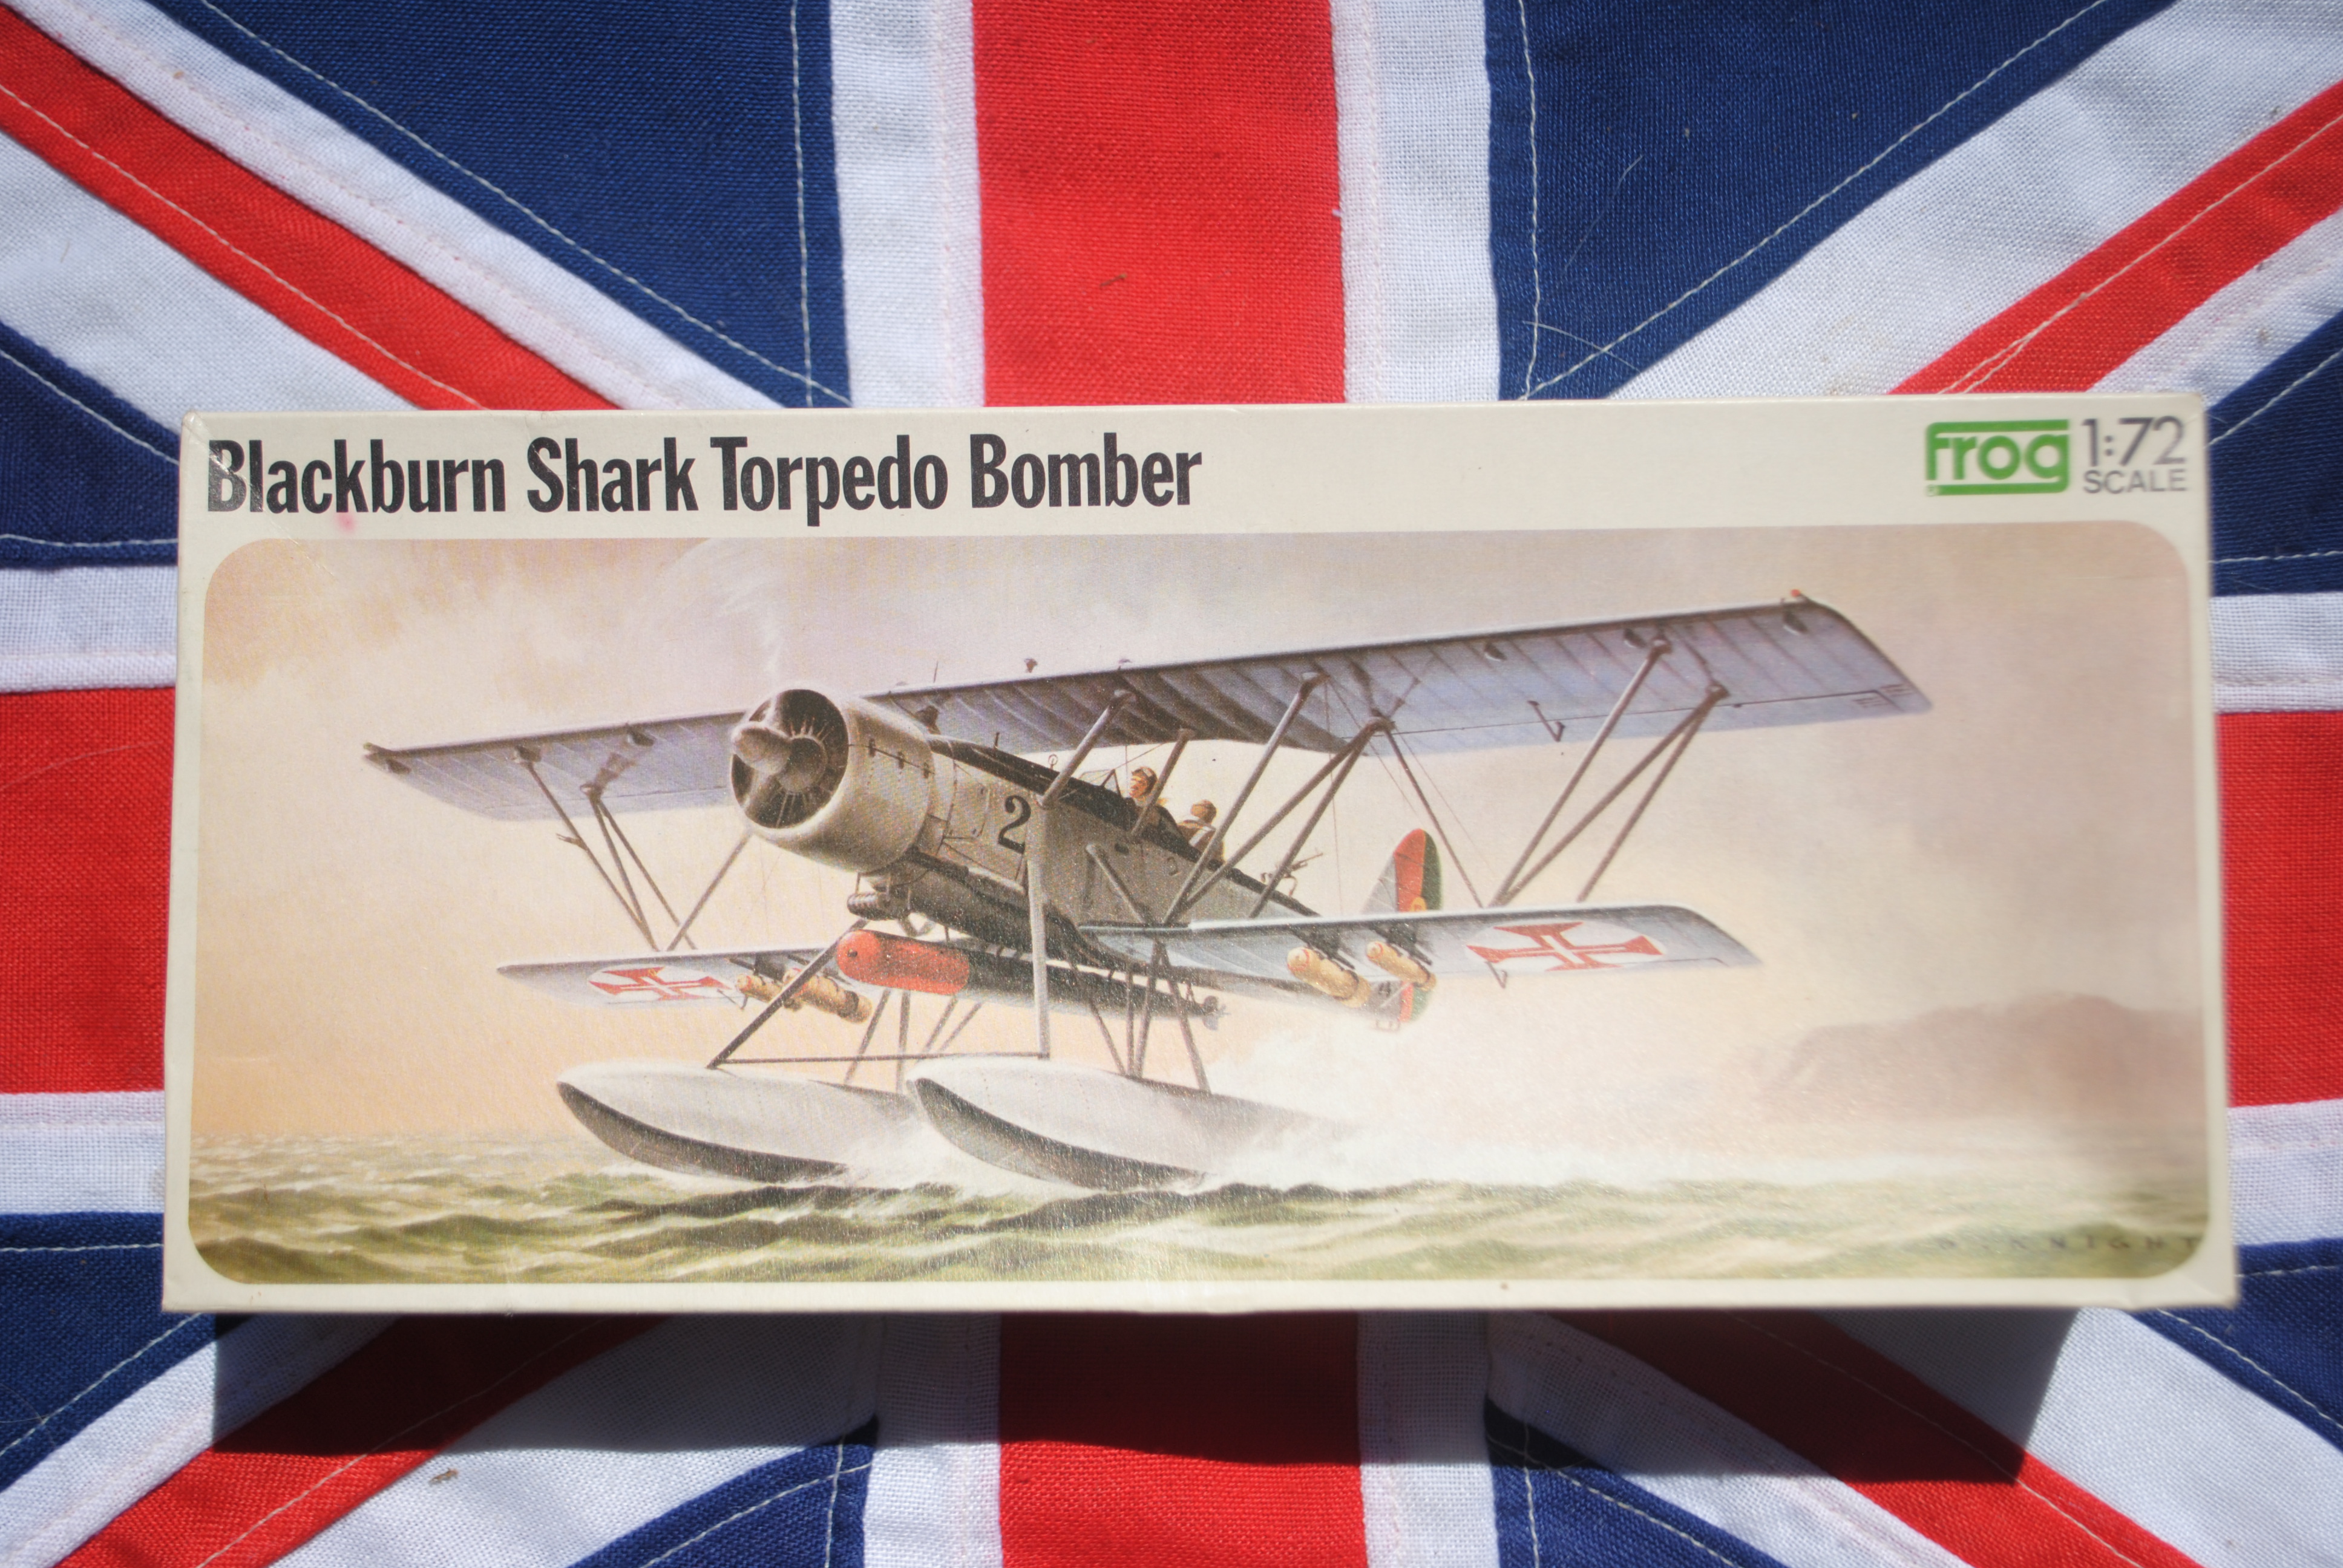 Frog F179 Blackburn Shark Torpedo Bomber